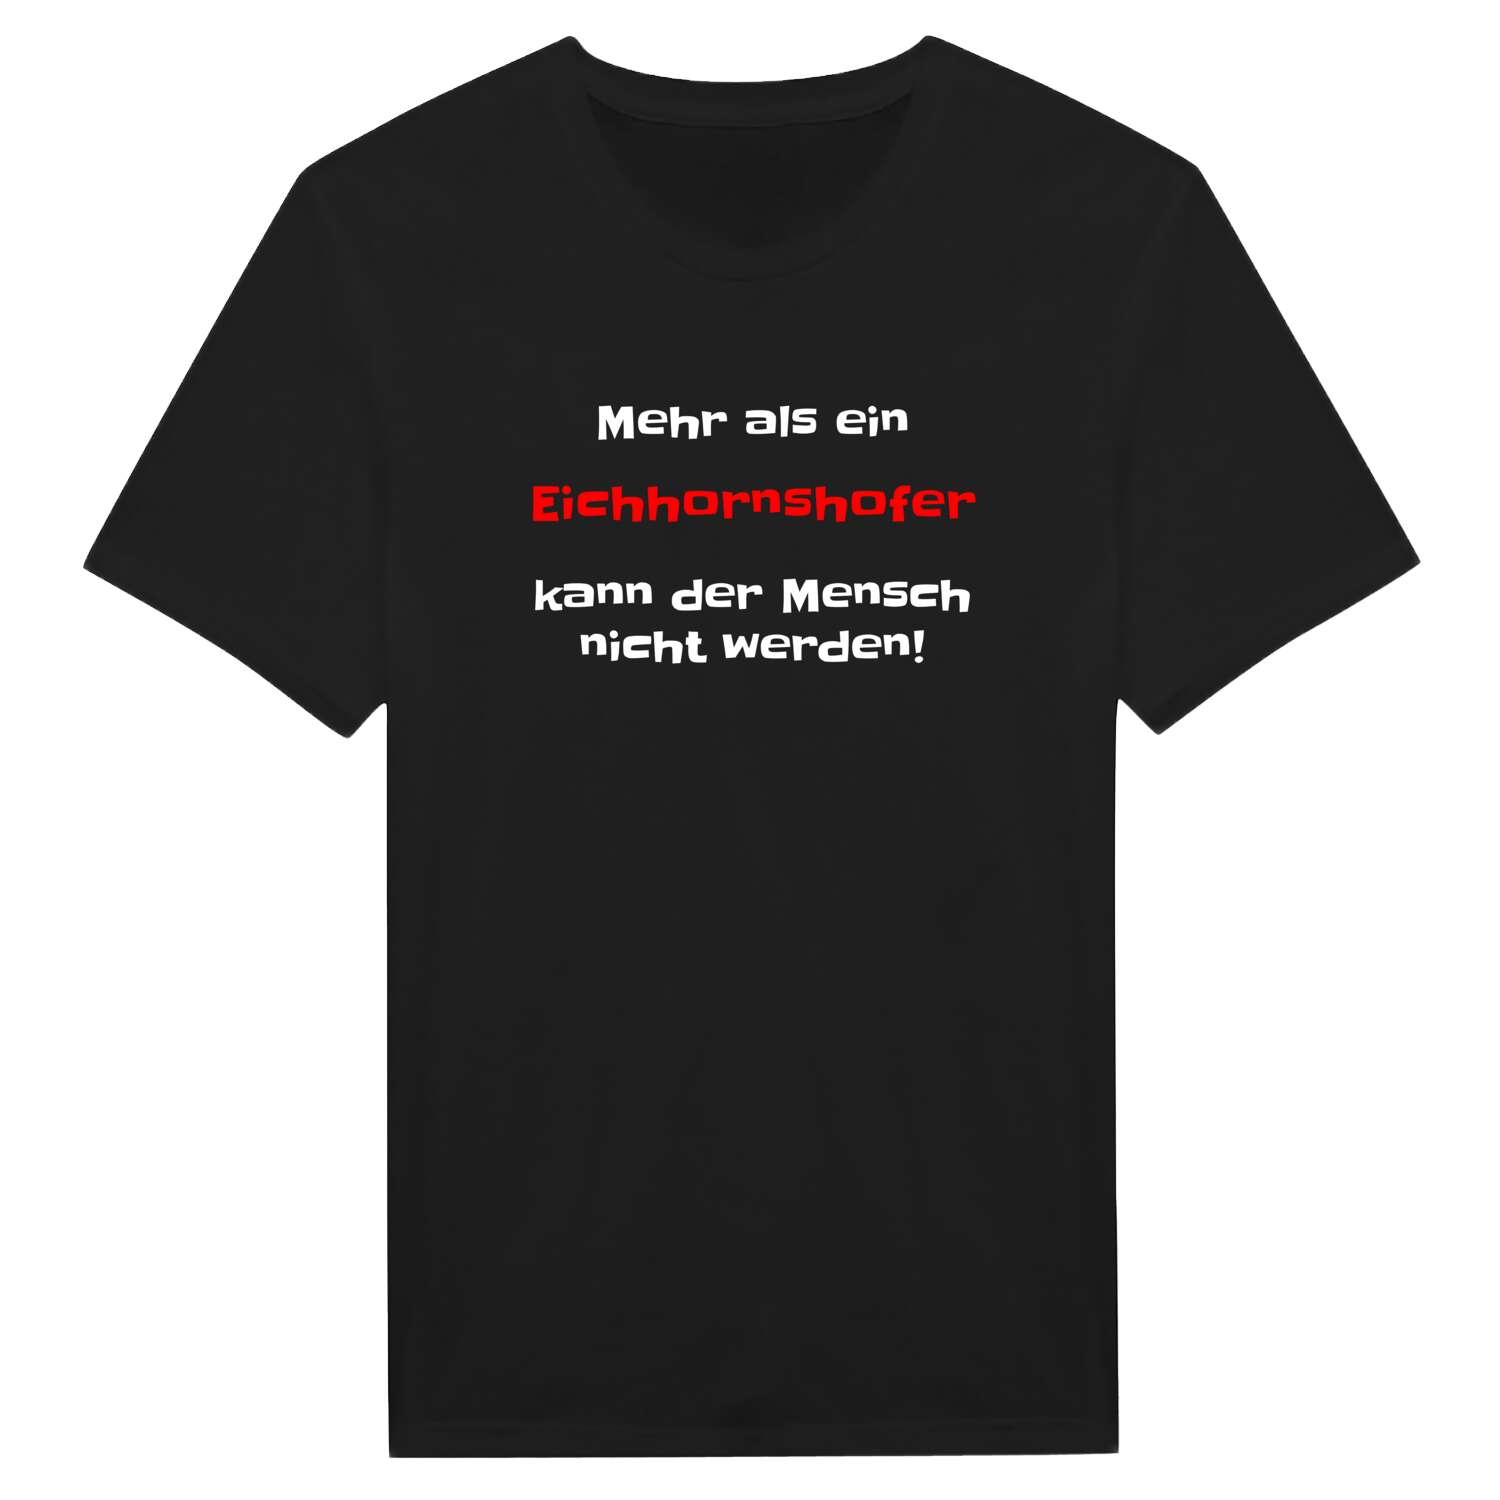 Eichhornshof T-Shirt »Mehr als ein«